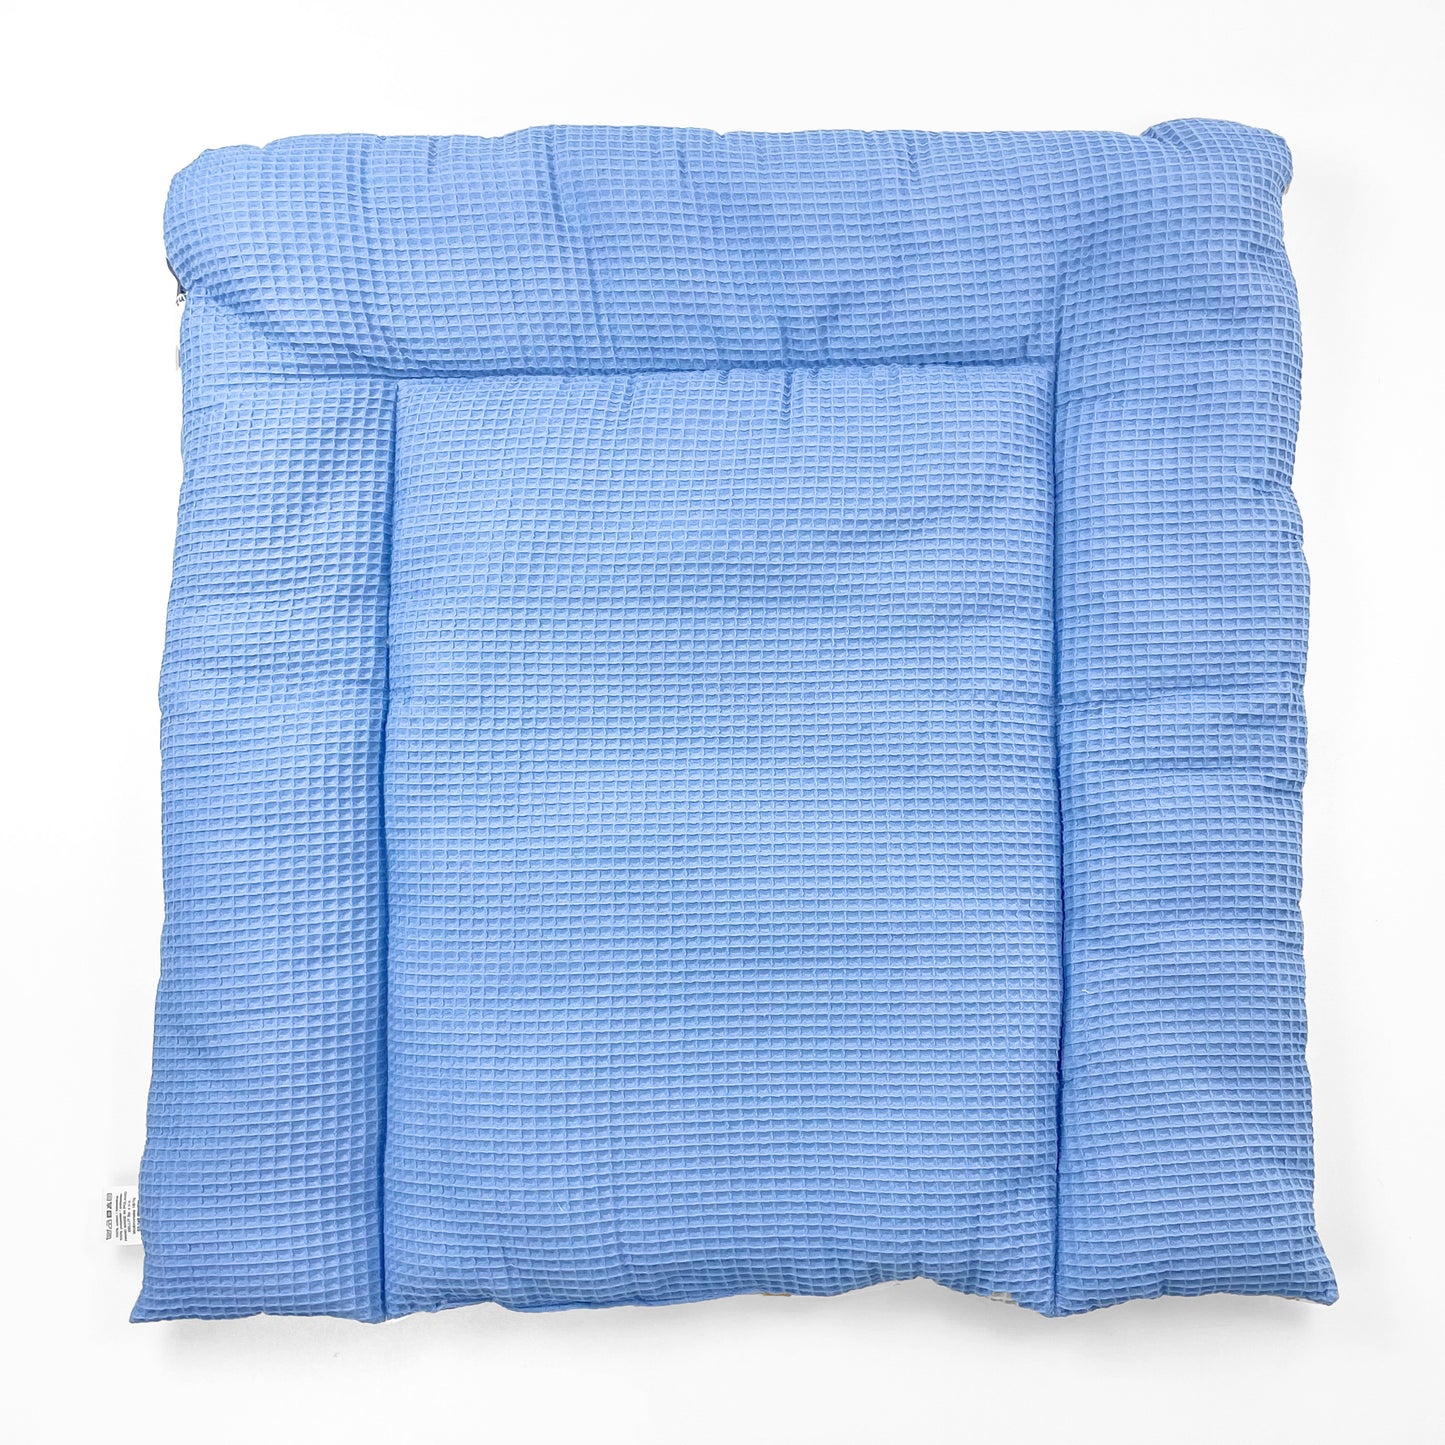 Wickelauflage Wickelunterlage 70x50 cm 100% Baumwolle Blau Weltall Junge Baby Kinder zweiseitig